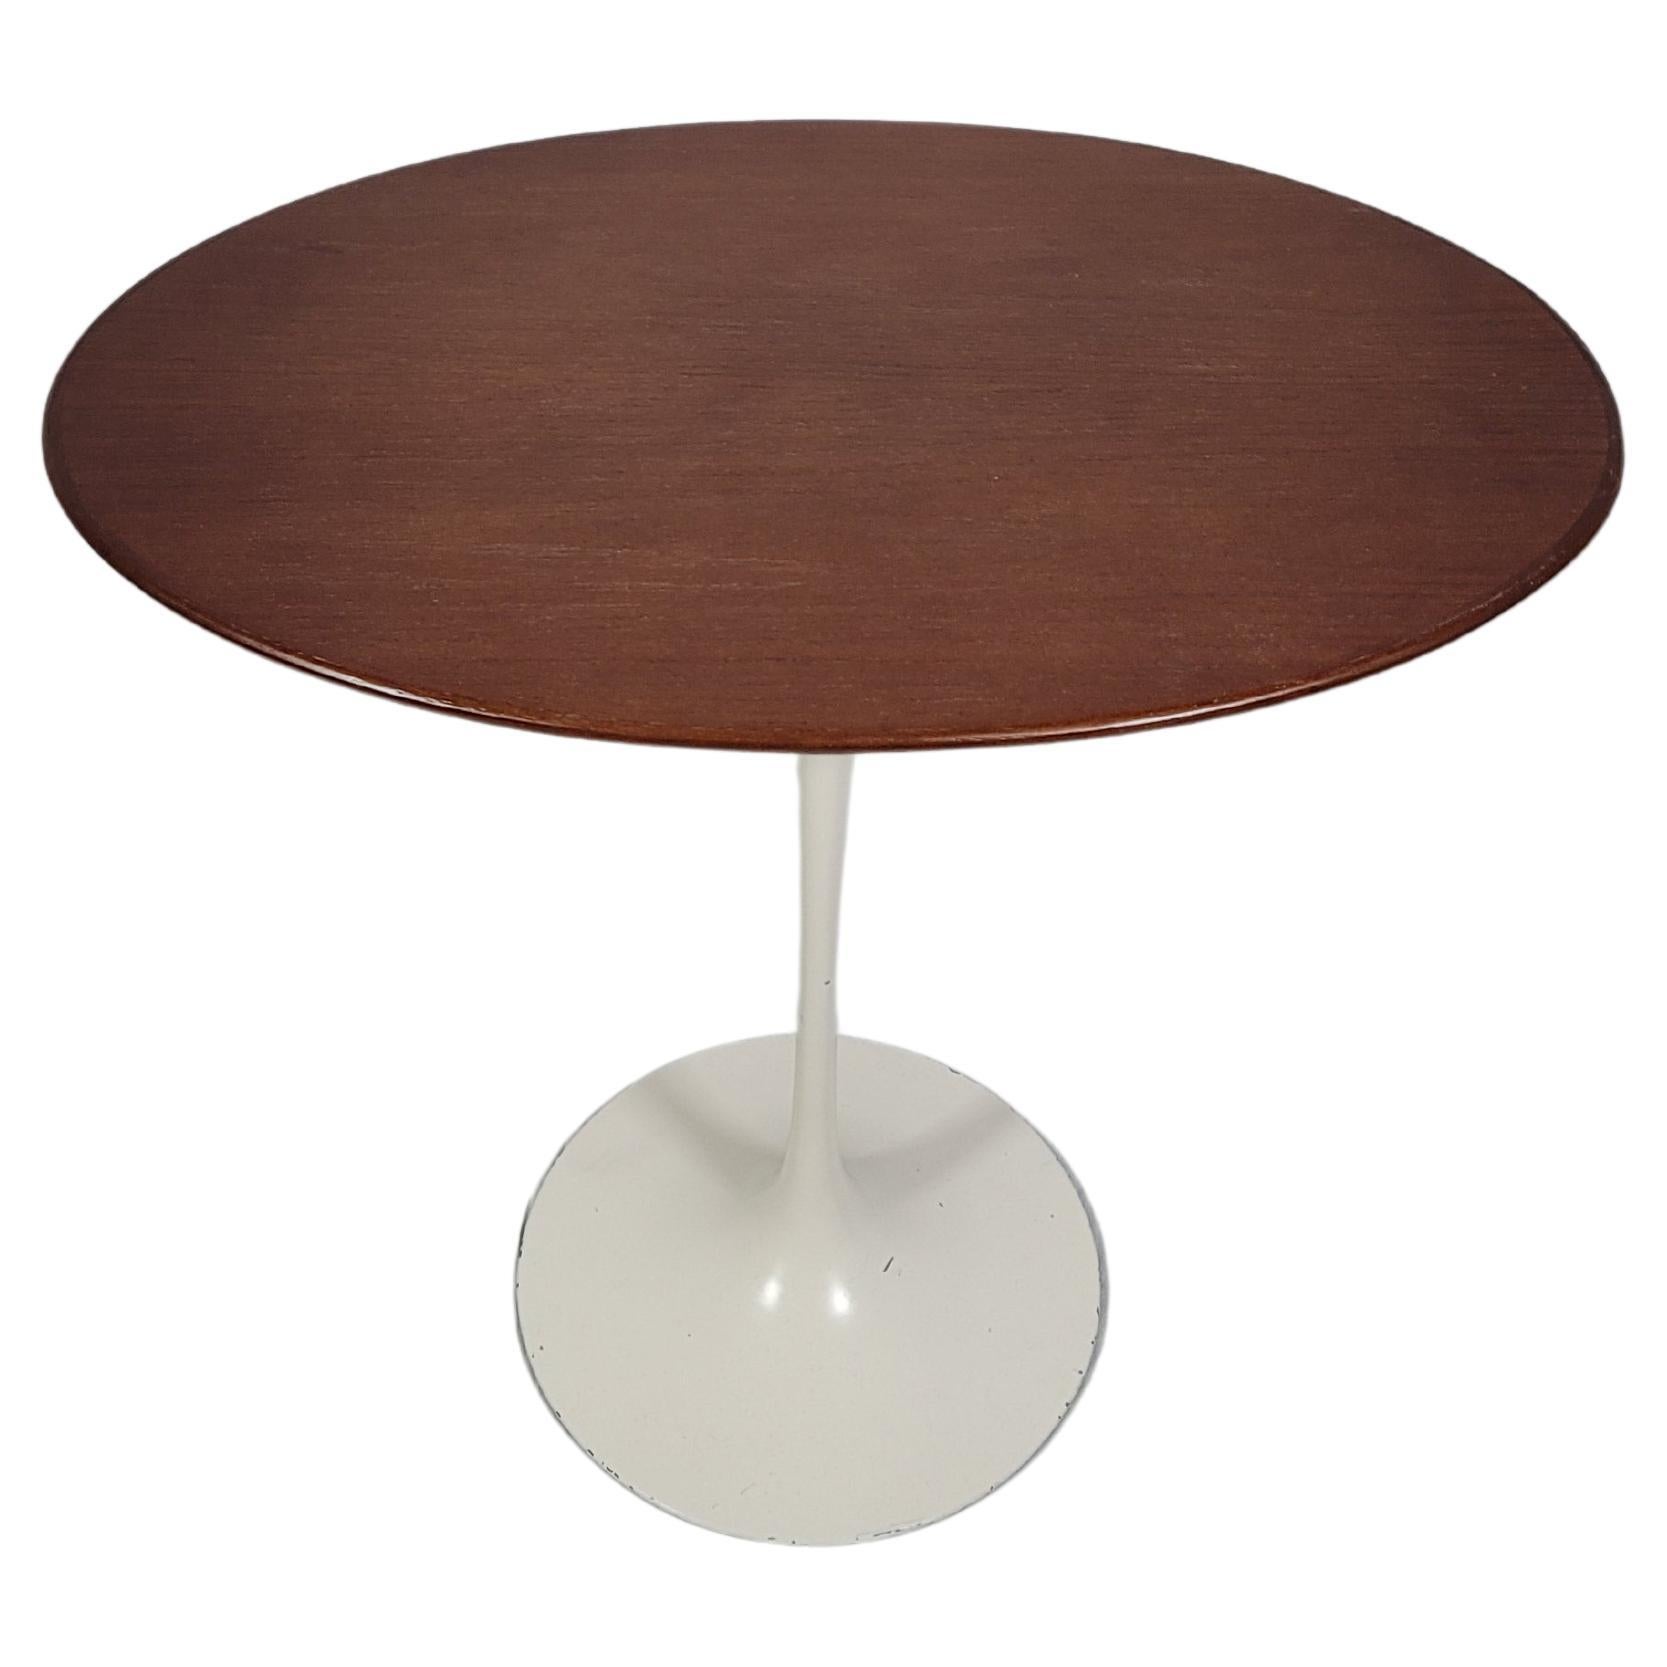 Eero Saarinen 22" Oval Tulip Base Side Table with Walnut Top